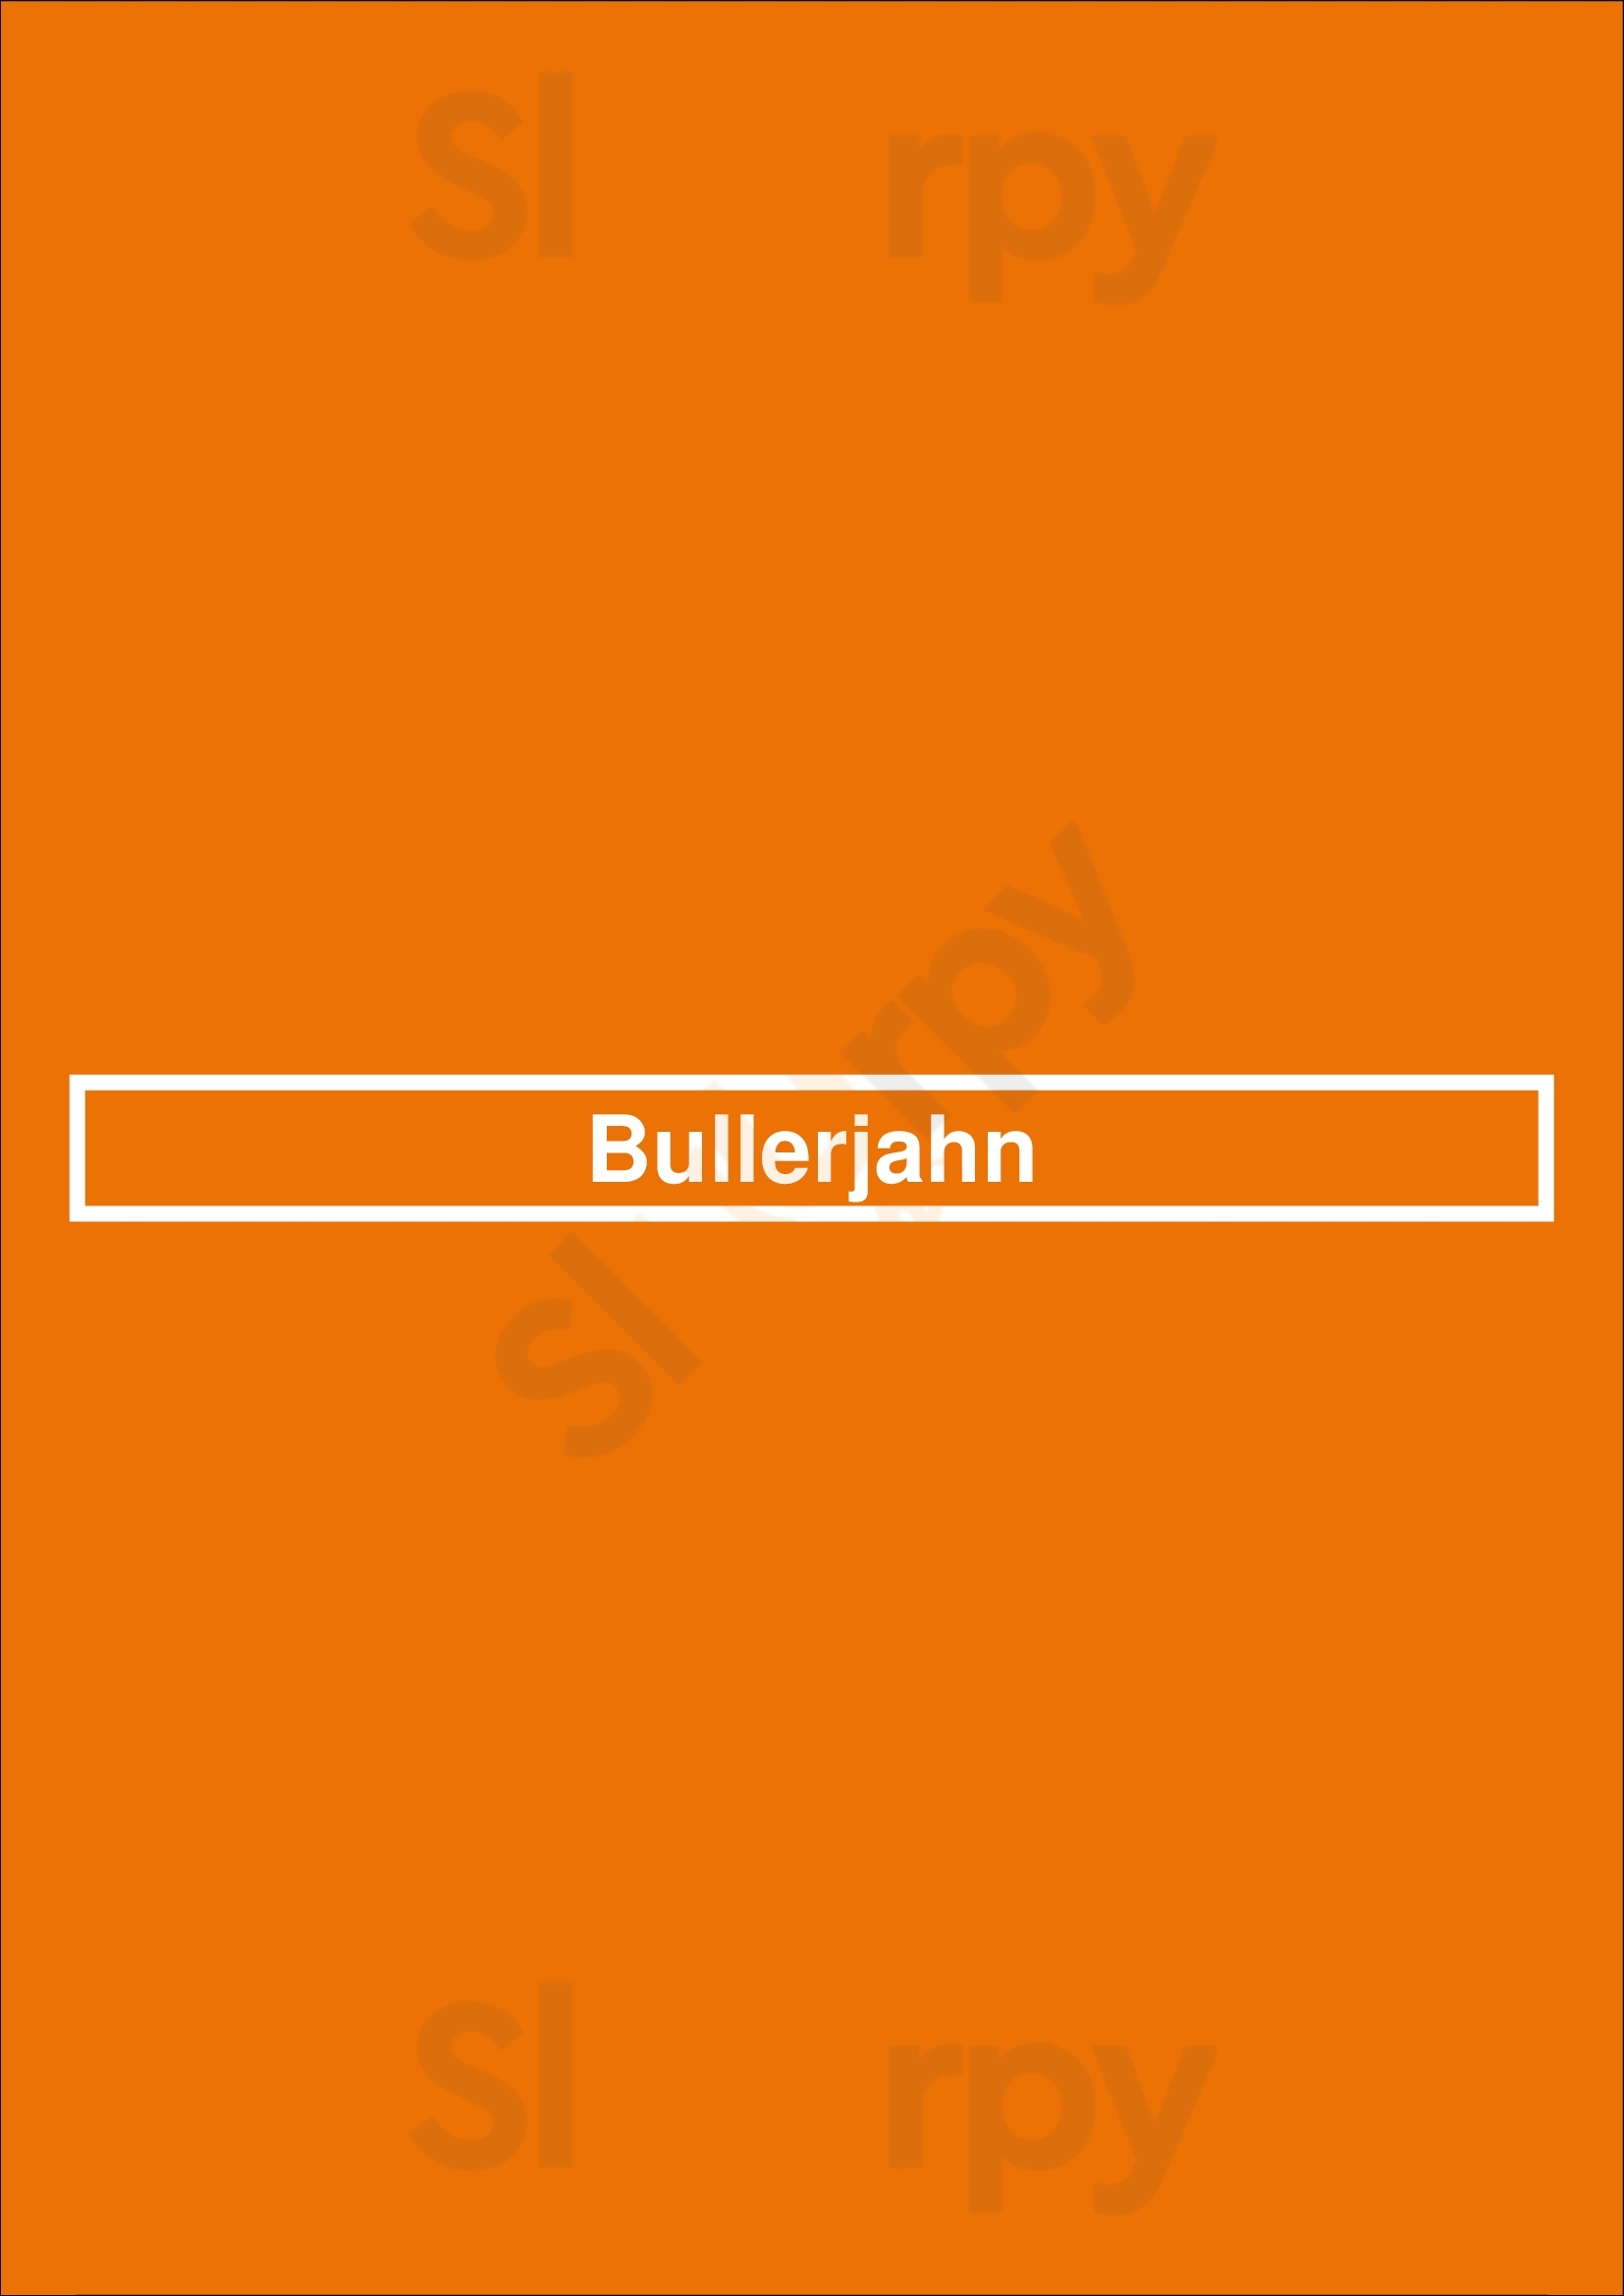 Bullerjahn Göttingen Menu - 1